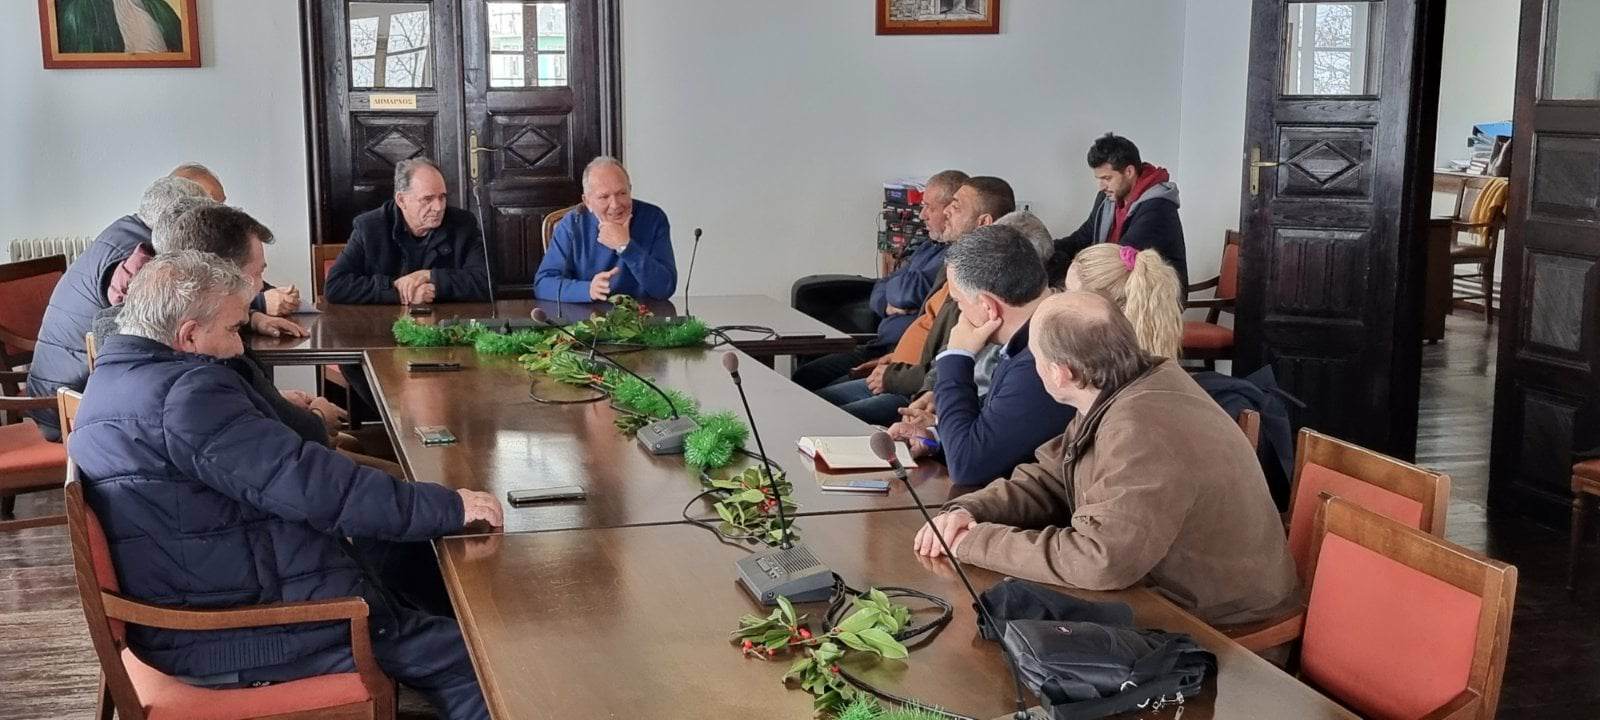 Σε ευρεία σύσκεψη στο Δημαρχείο Ζαγοράς αναδείχθηκαν προβλήματα και αιτήματα της ευρύτερης περιοχής